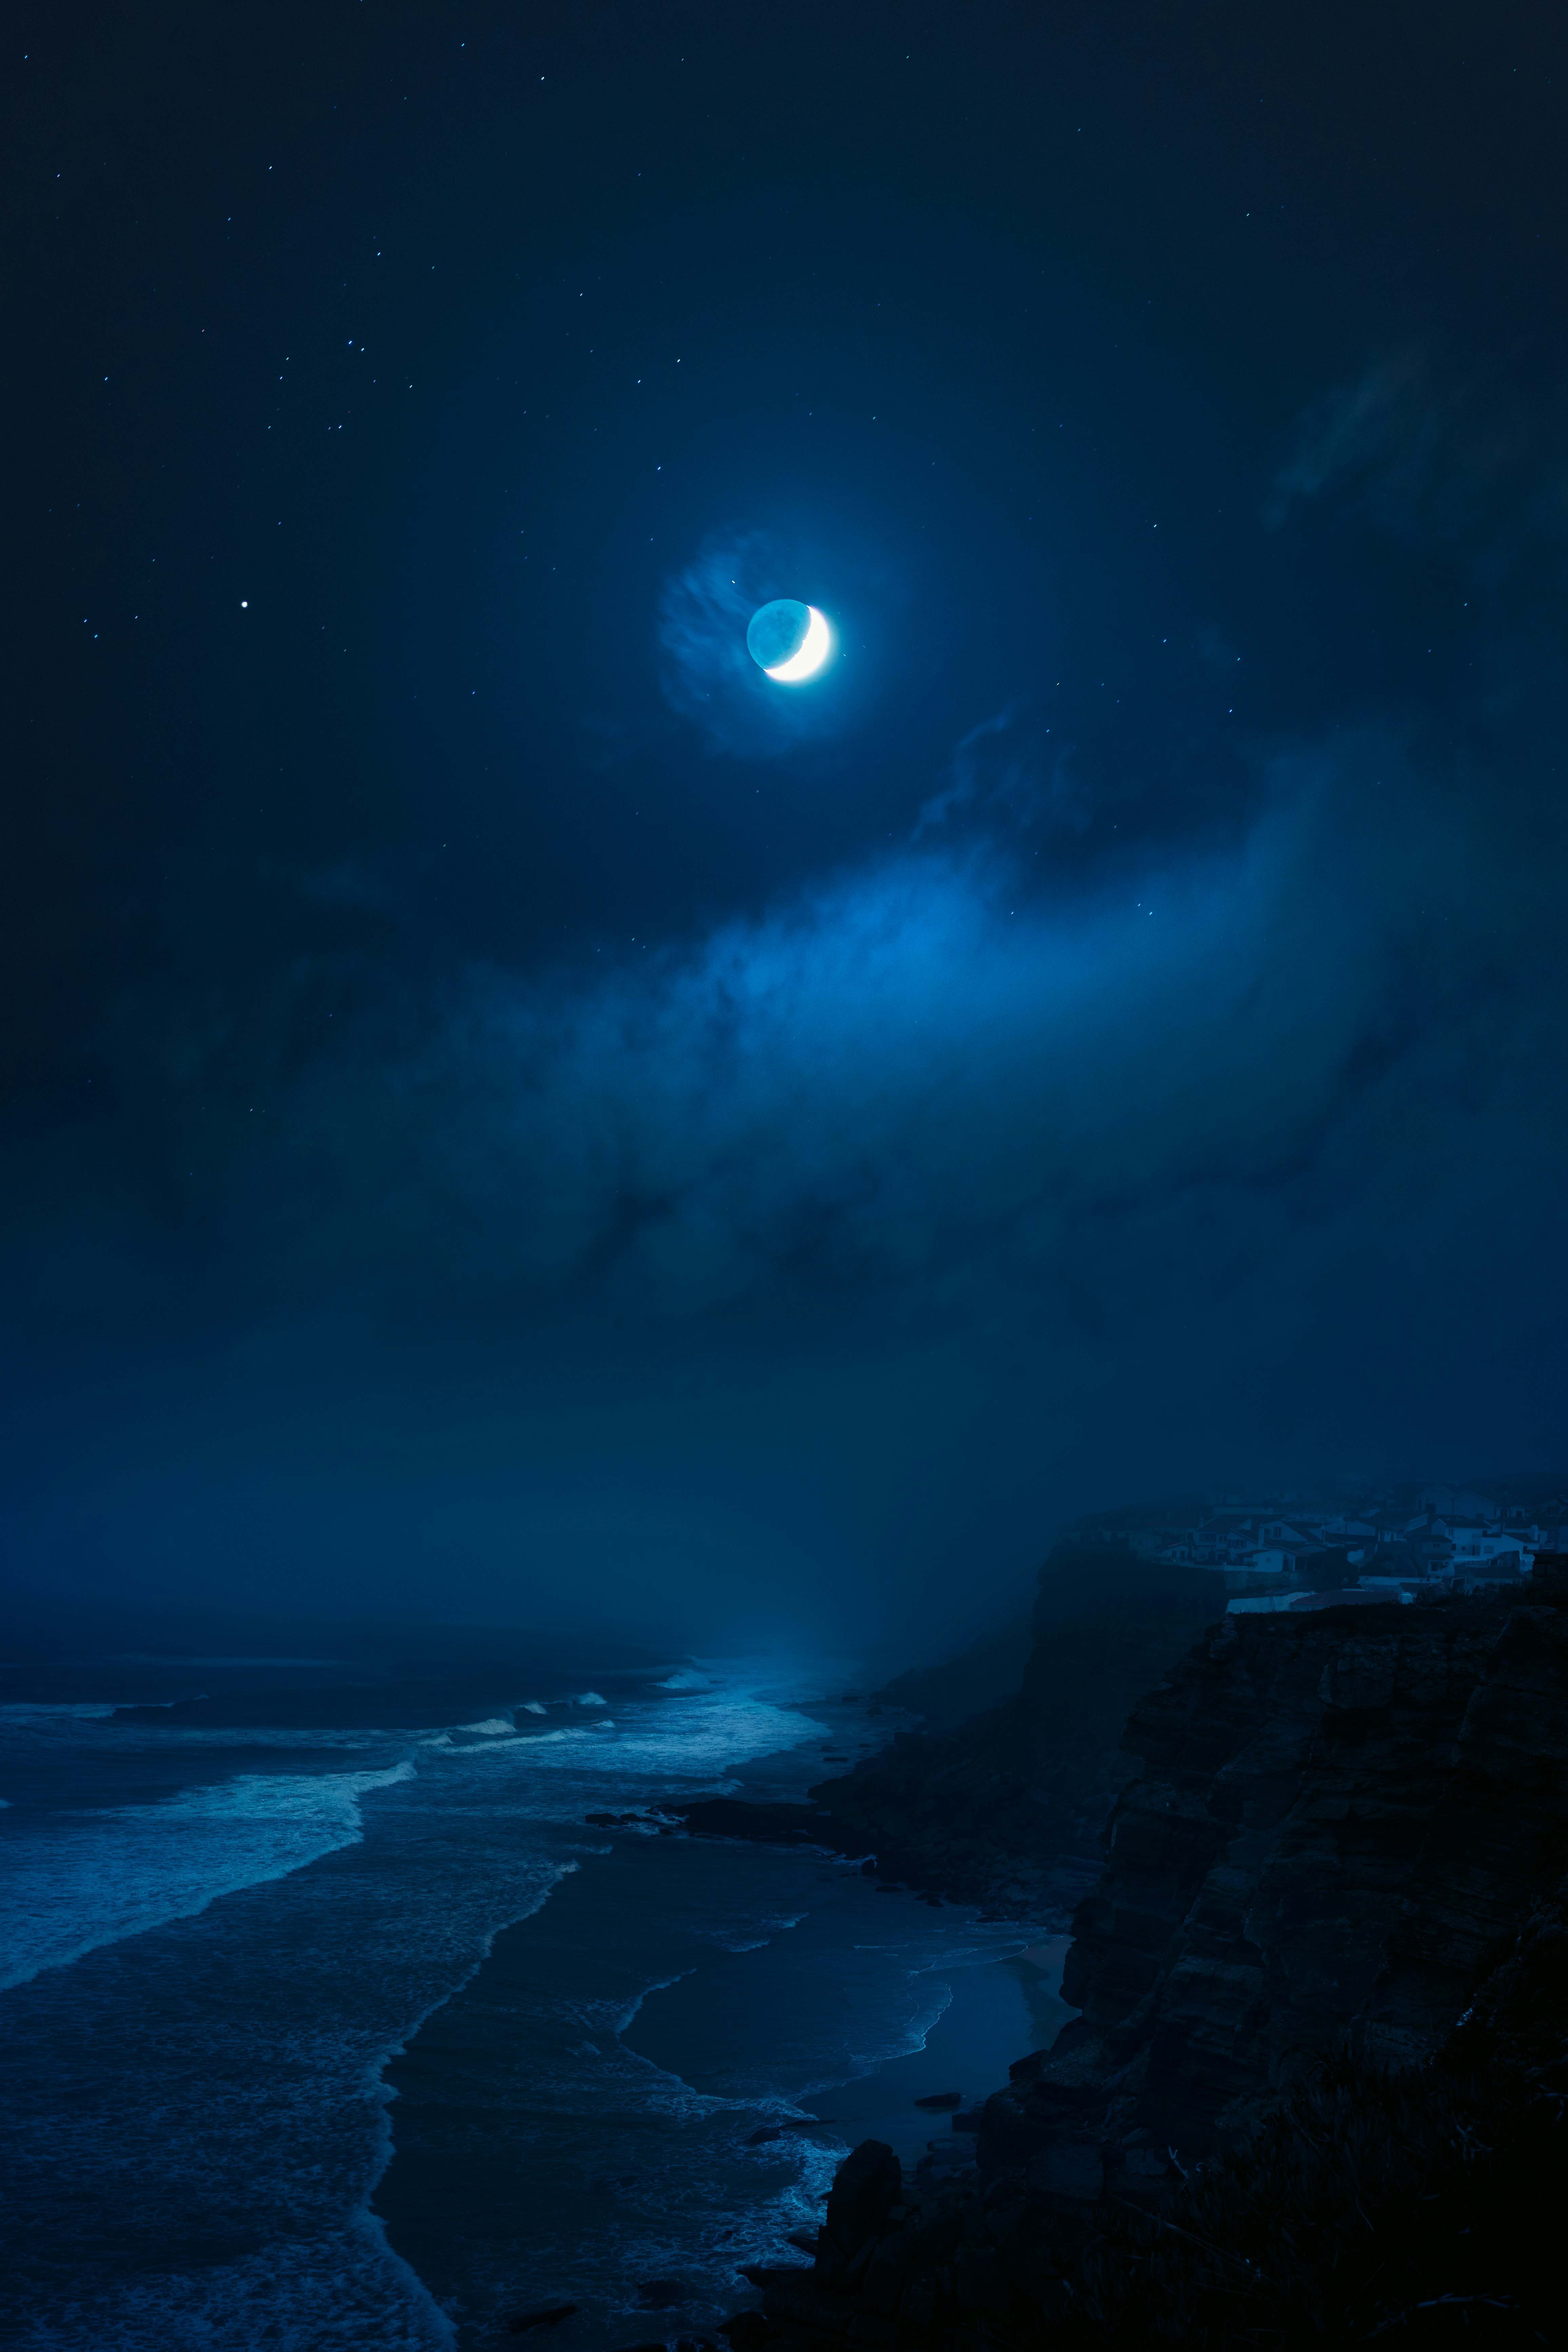 rocky shore under full moon